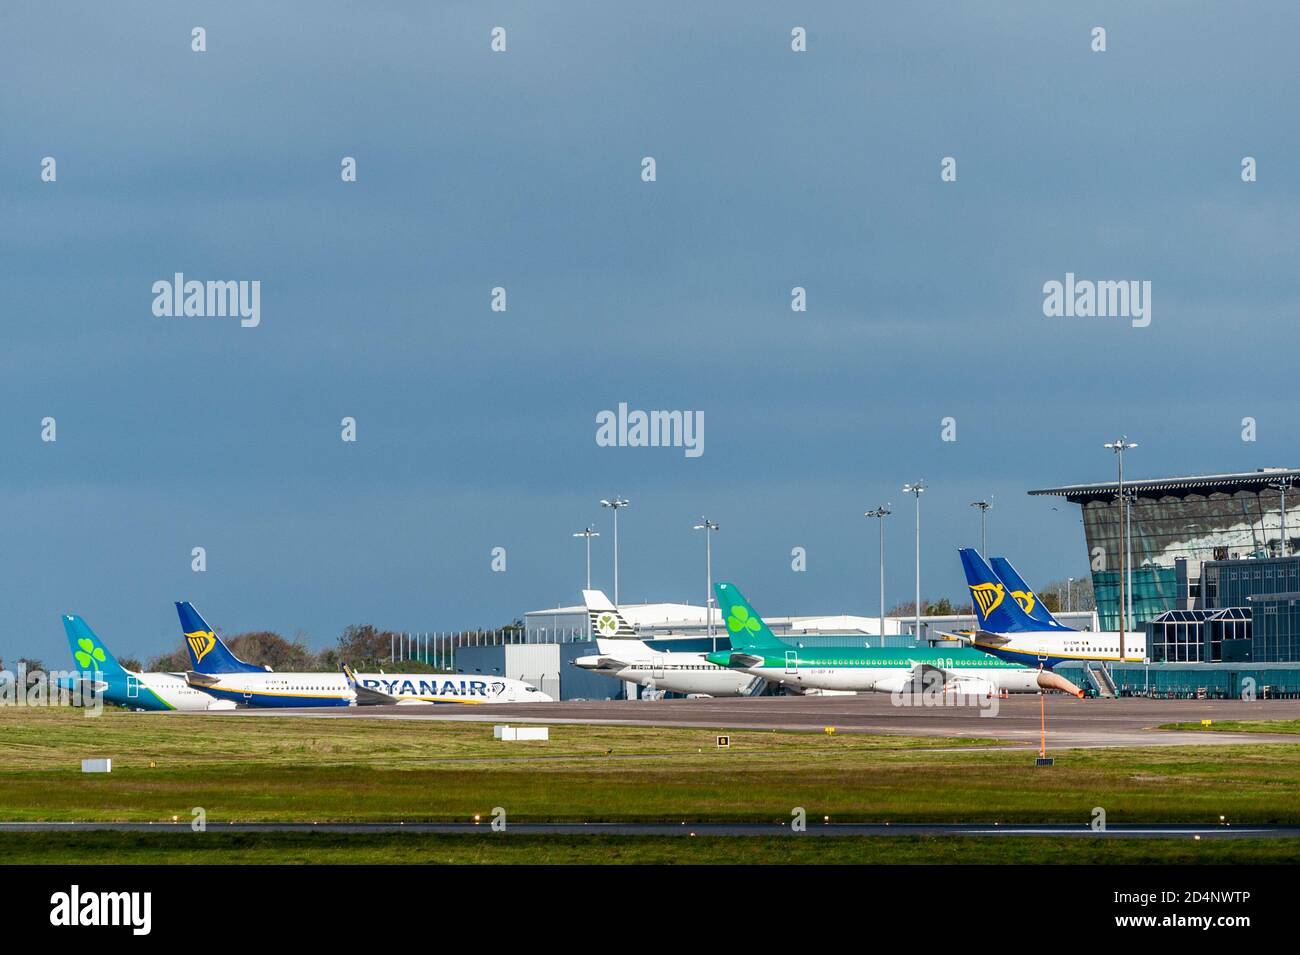 Cork, Irlande. 10 octobre 2020. Les avions AER Lingus et Ryanair sont redondants sur le tarmac de l'aéroport de Cork, les restrictions de niveau 3 de l'Irlande frappant fortement les voyages internationaux. A partir du lundi 12 octobre, le gouvernement a déclaré qu'il n'y aura pas de pays étrangers sur la liste verte de voyage, ce qui signifie que quiconque vole en Irlande devra s'auto-isoler pendant 14 jours. La prochaine revue aura lieu le 15 octobre. Crédit : AG News/Alay Live News Banque D'Images